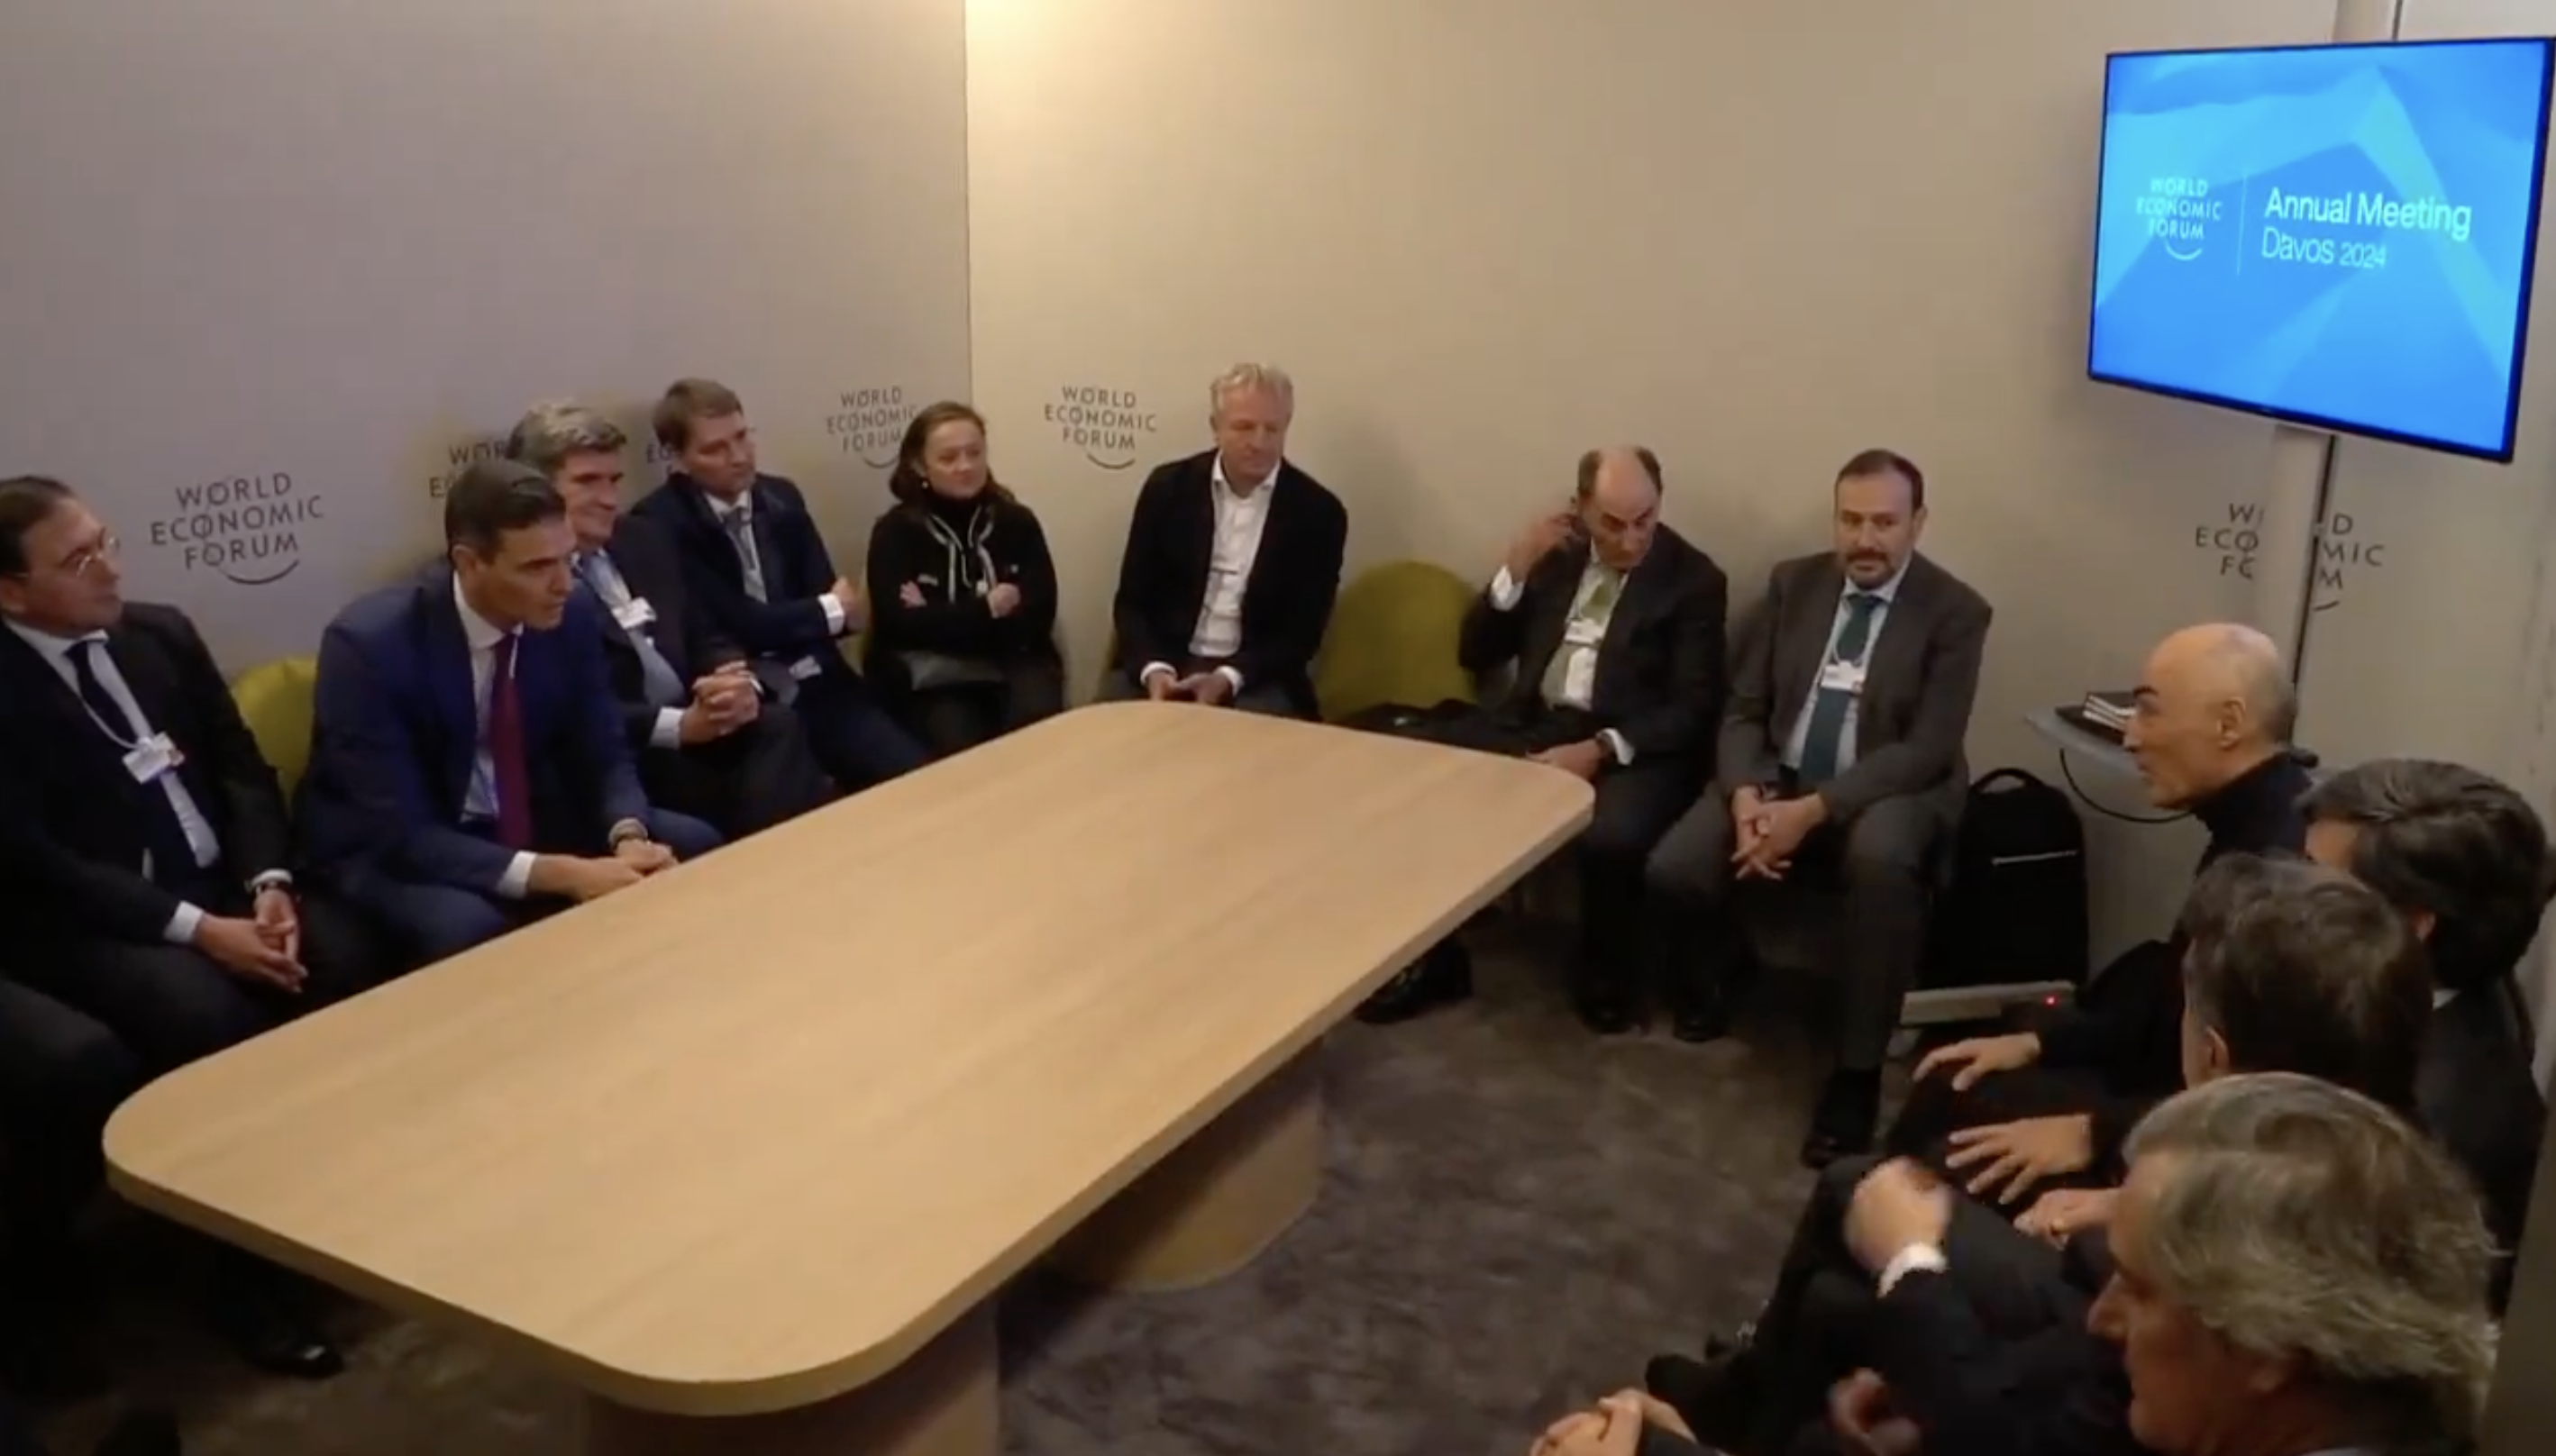 Reunión en Davos entre empresas del Ibex y Pedro Sánchez